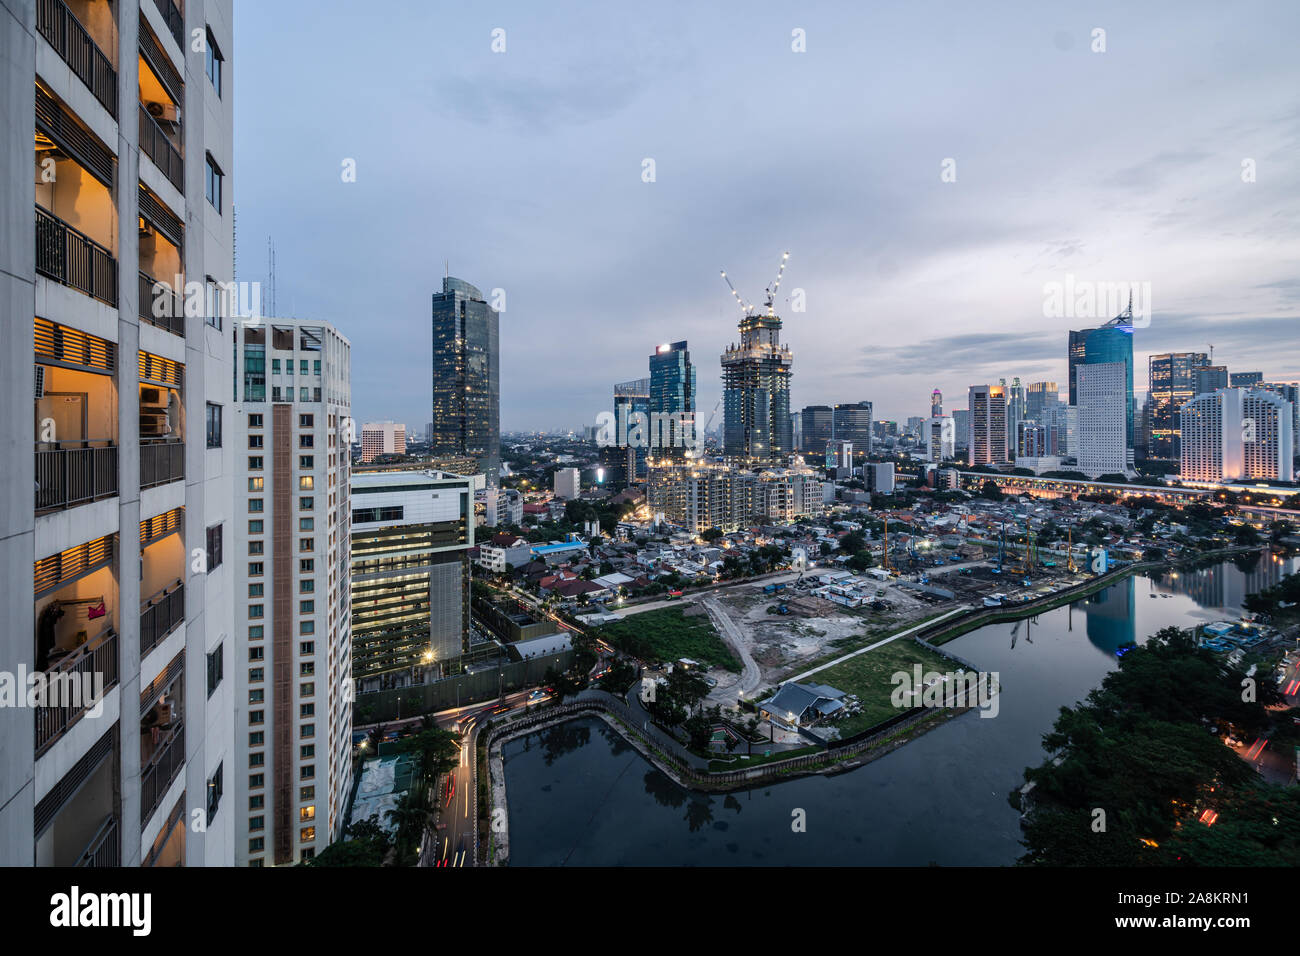 Le crépuscule sur le quartier des affaires de Jakarta en Indonésie capitale Banque D'Images